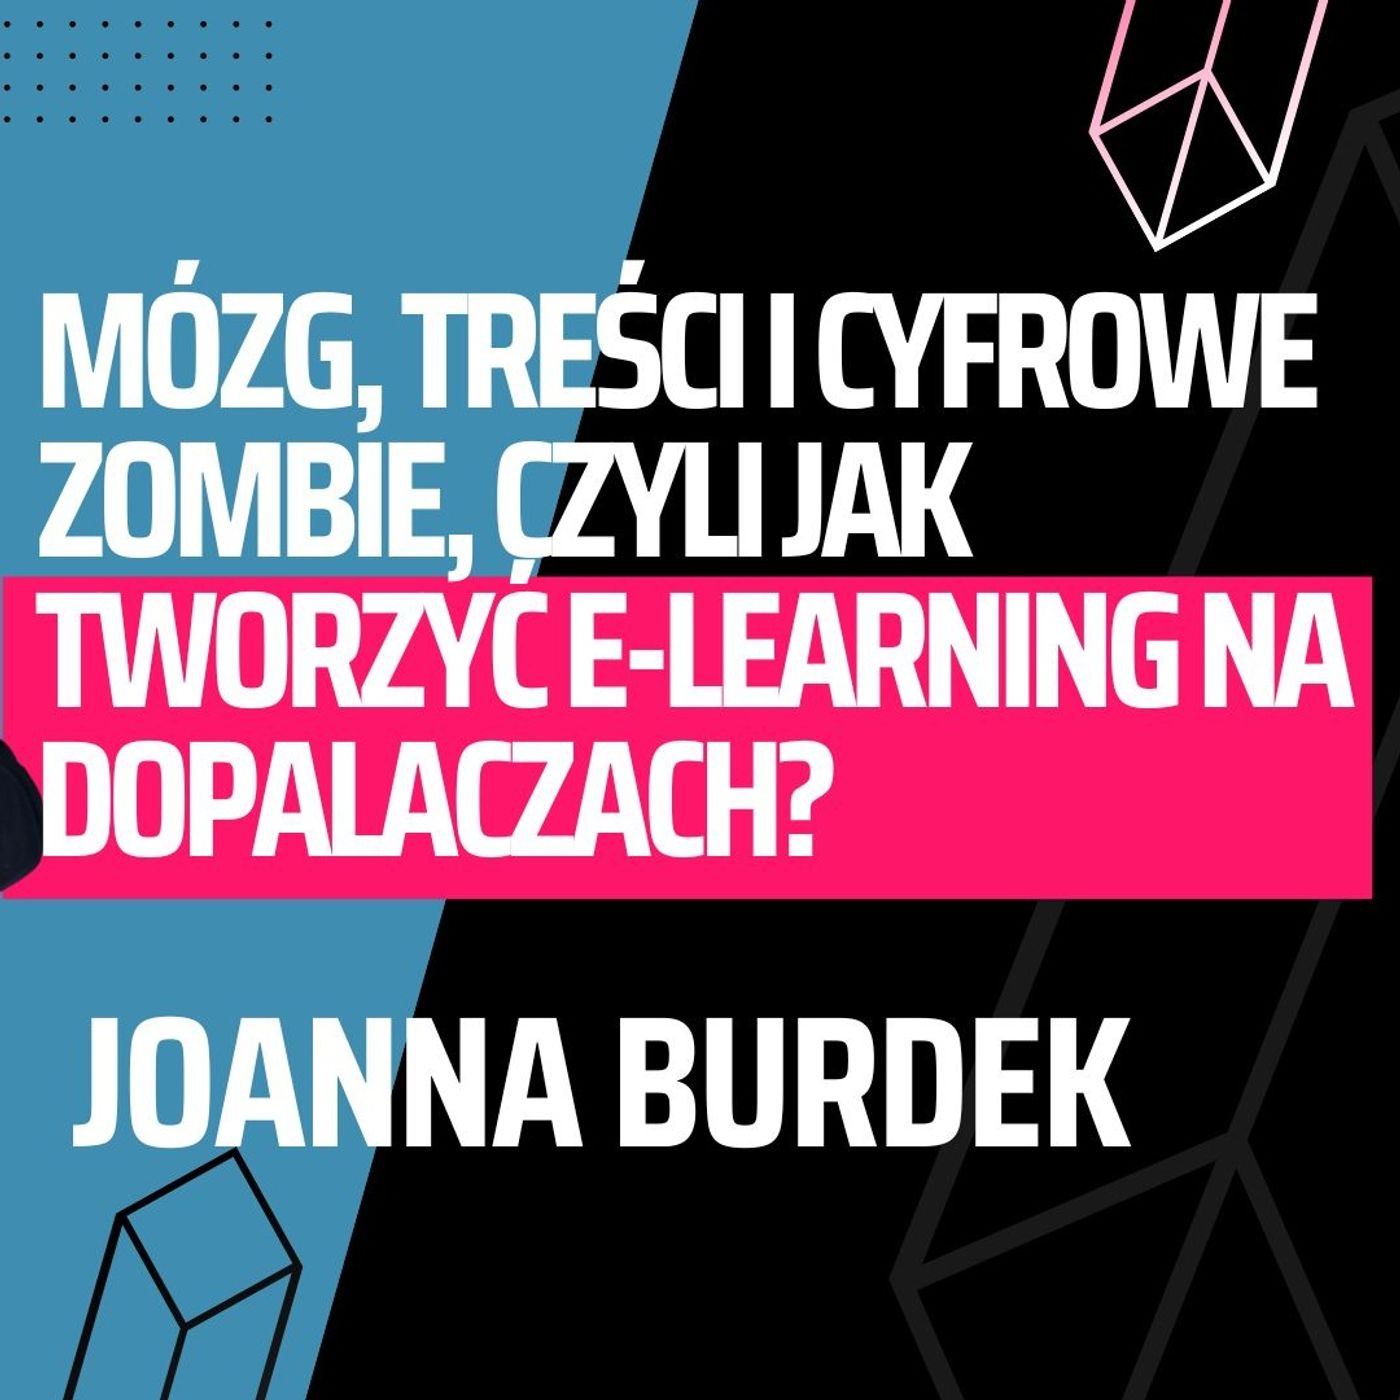 S07E14. Mózg, treści i cyfrowe zombie, czyli jak tworzyć e-learning na dopalaczach?